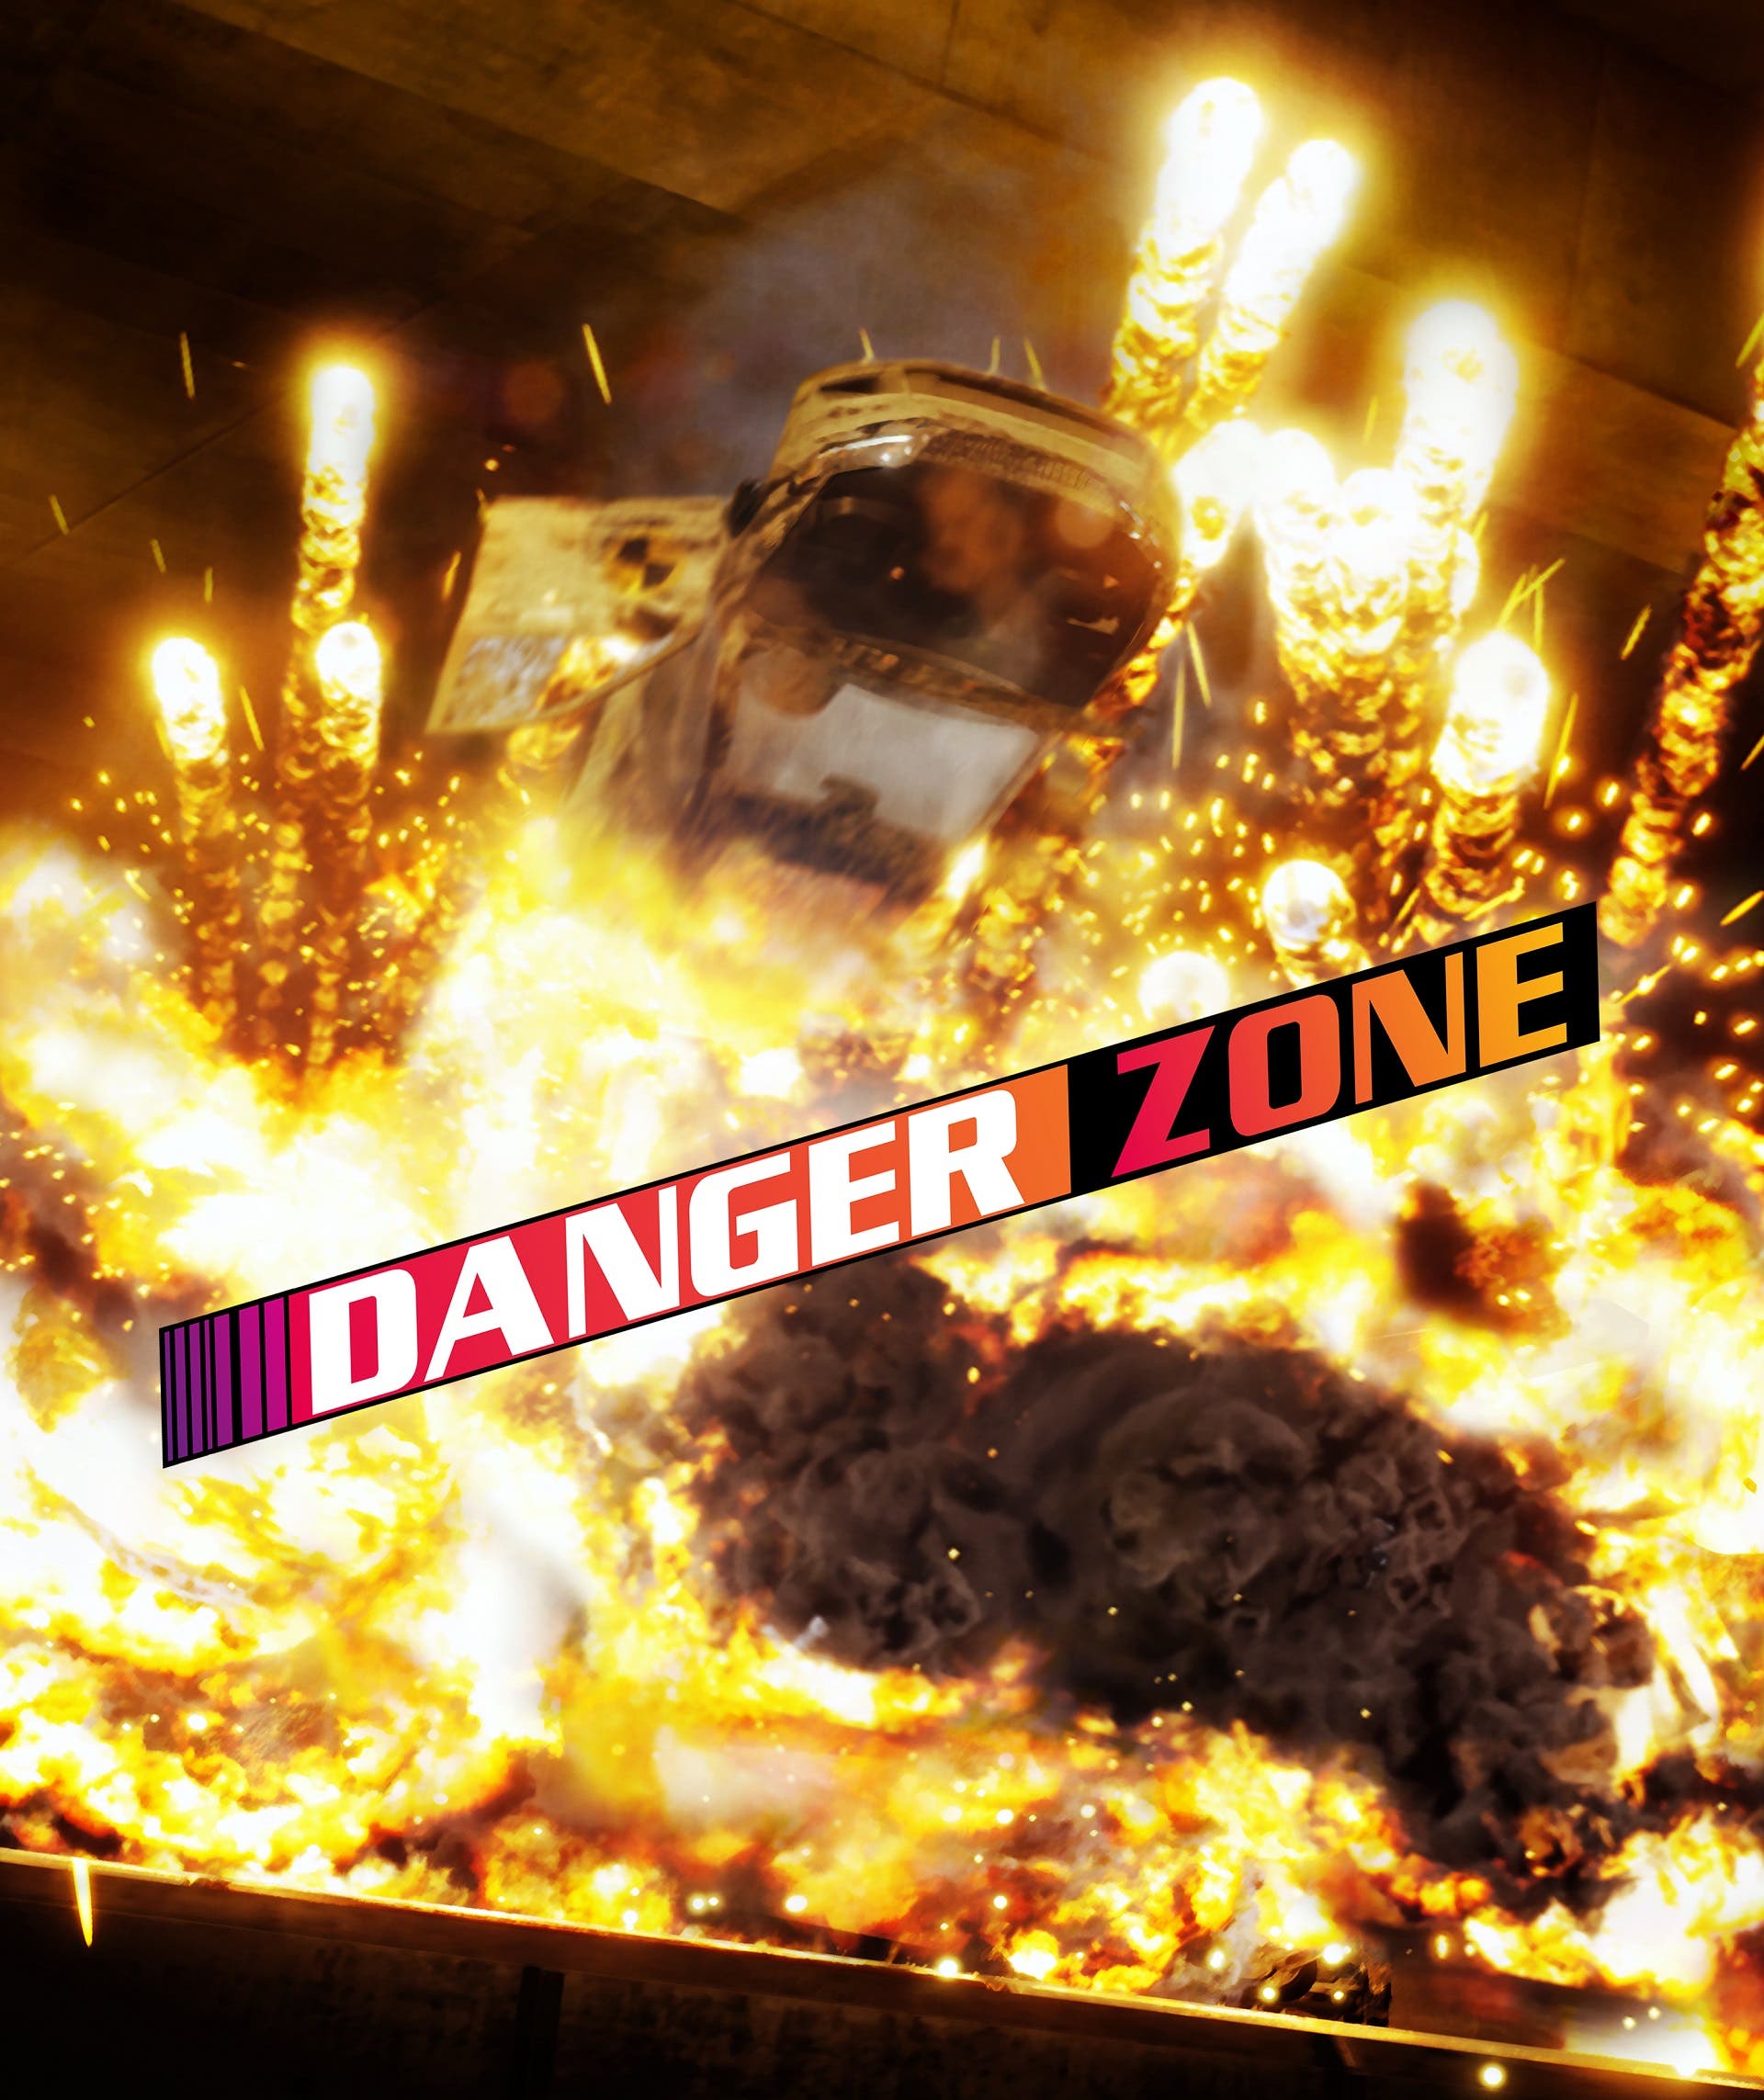 DangerZone Cover Art with logo US Magazine size 9.25 x 11